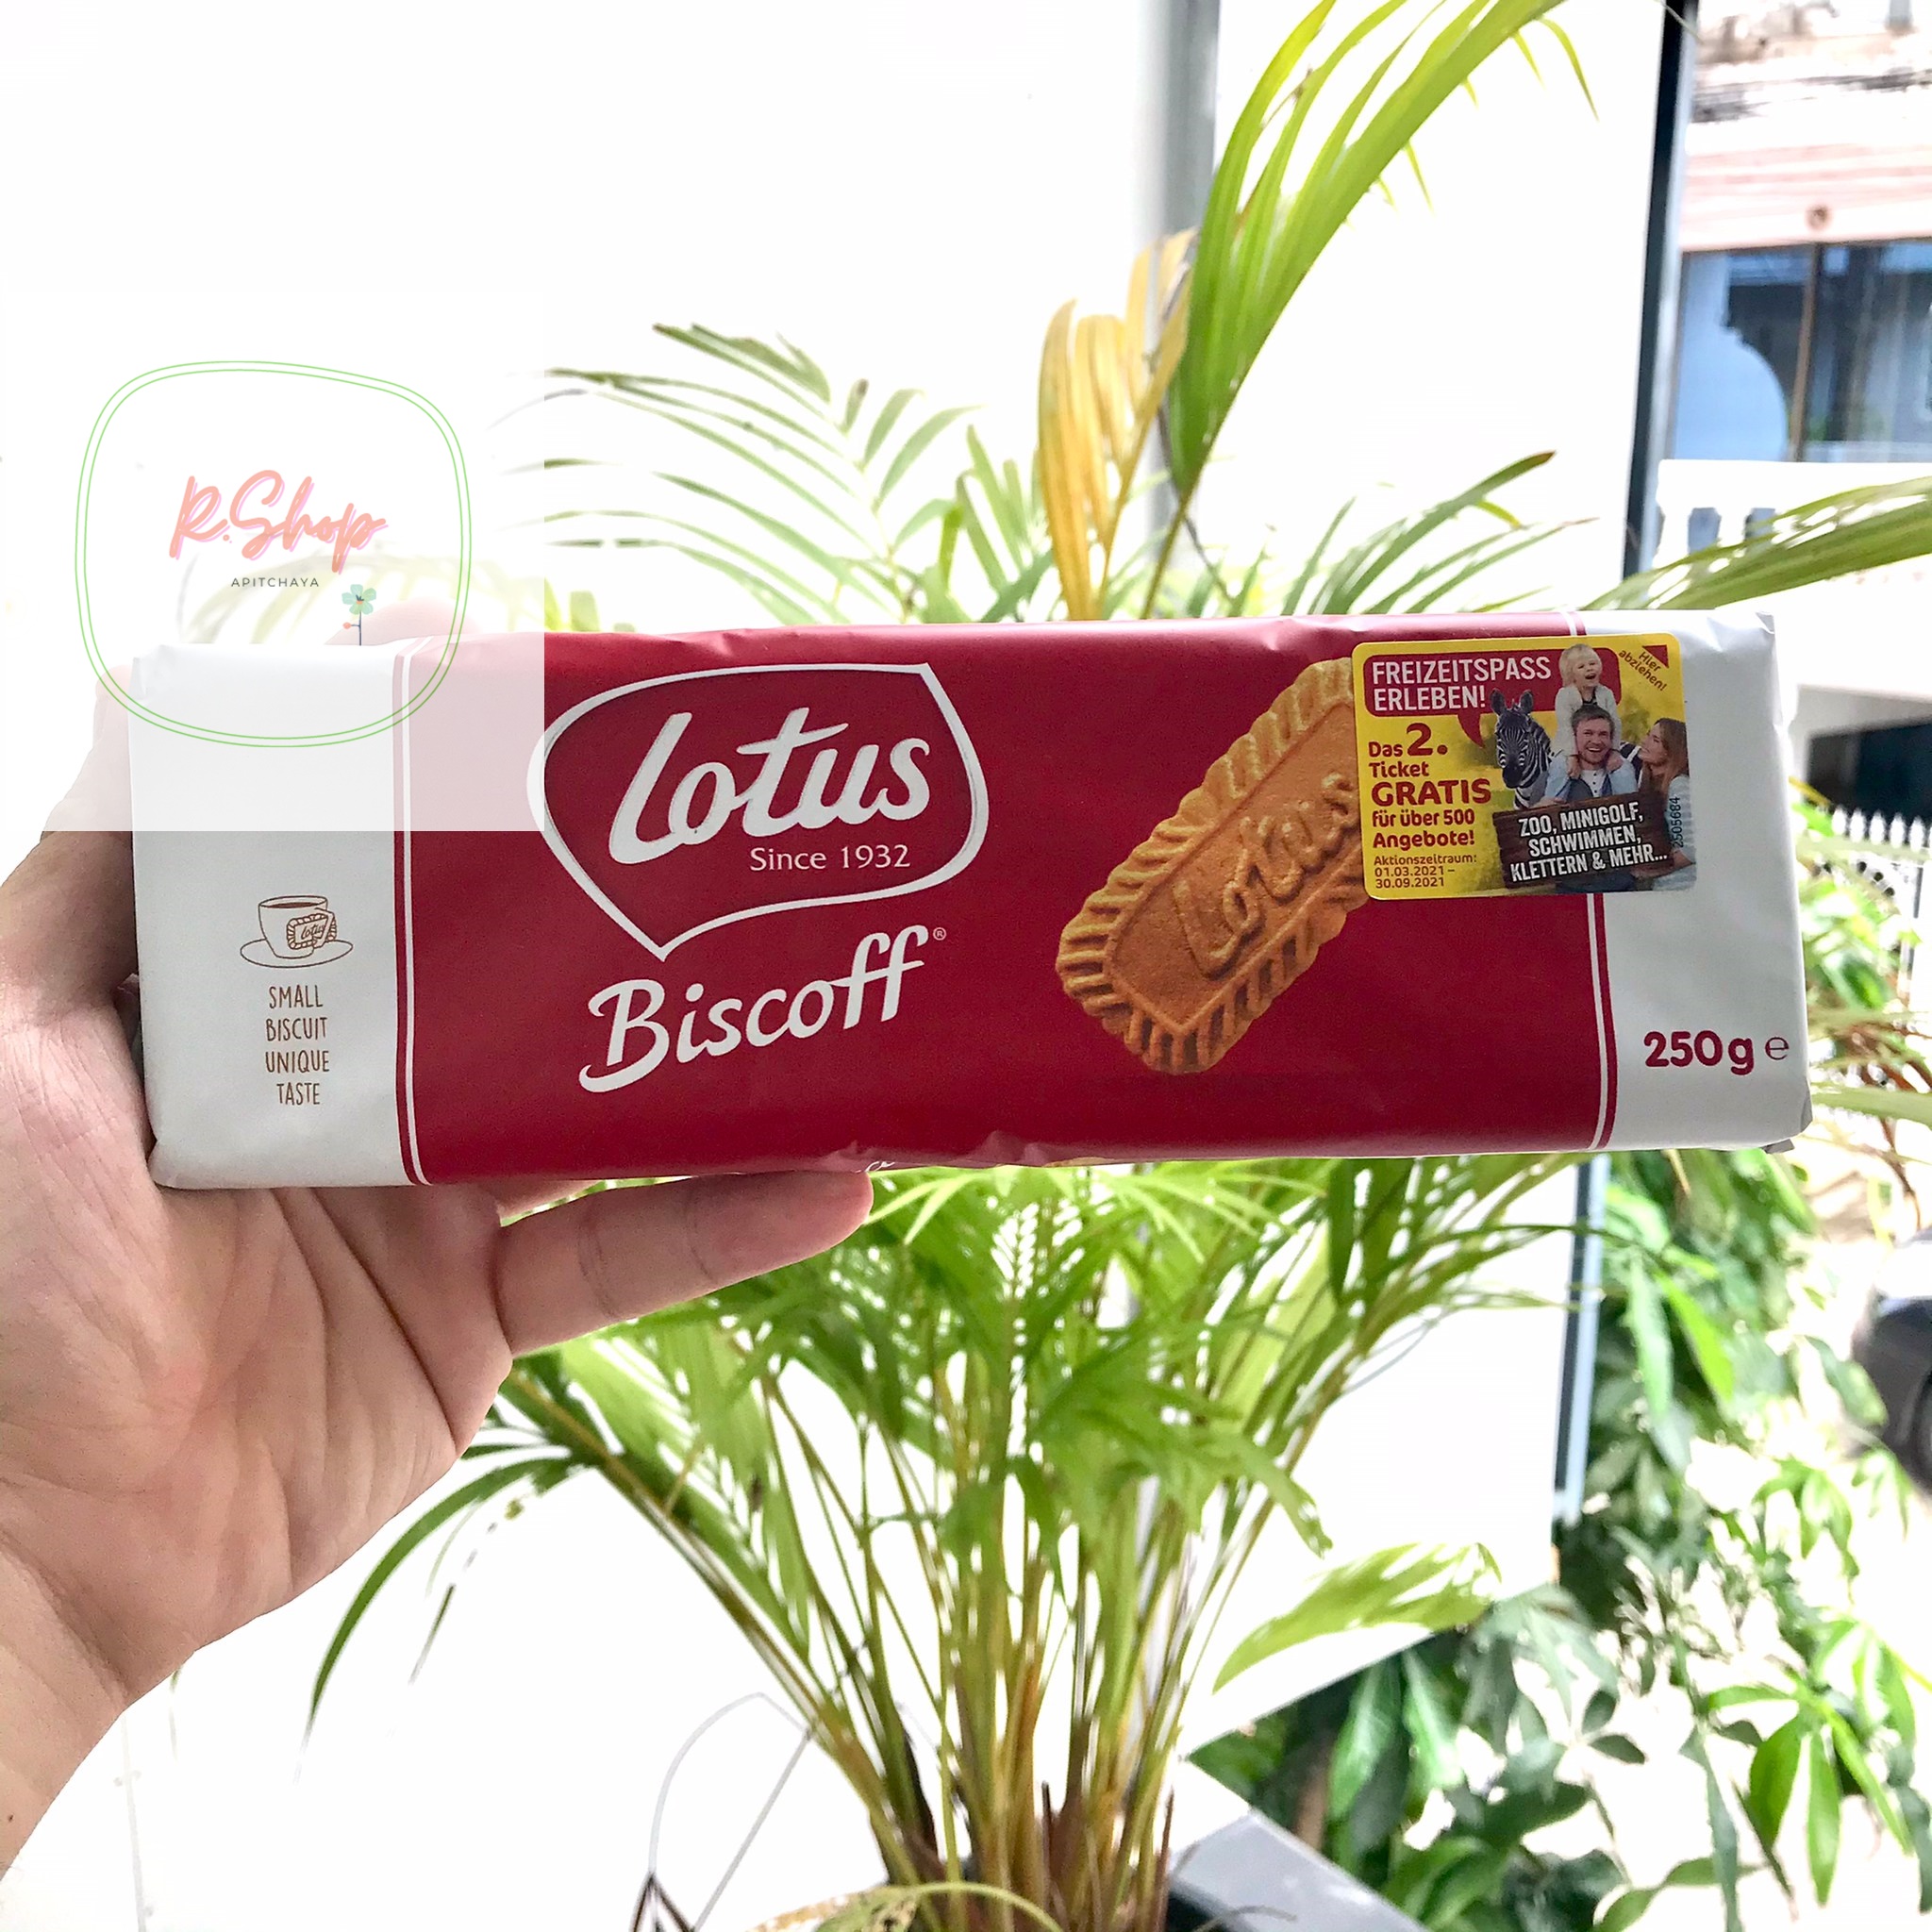 Lotus Biscuit  บิสกิตรสชาติ original บิสกิต คุกกี้ ขนม ขนมขบเคี้ยว ขนมทอดกรอบ ขนมอบกรอบ ขนมอร่อยๆ ขนมต่างประเทศ ขนมนำเข้า ช็อคโกแล็ต ขนมญี่ปุ่น